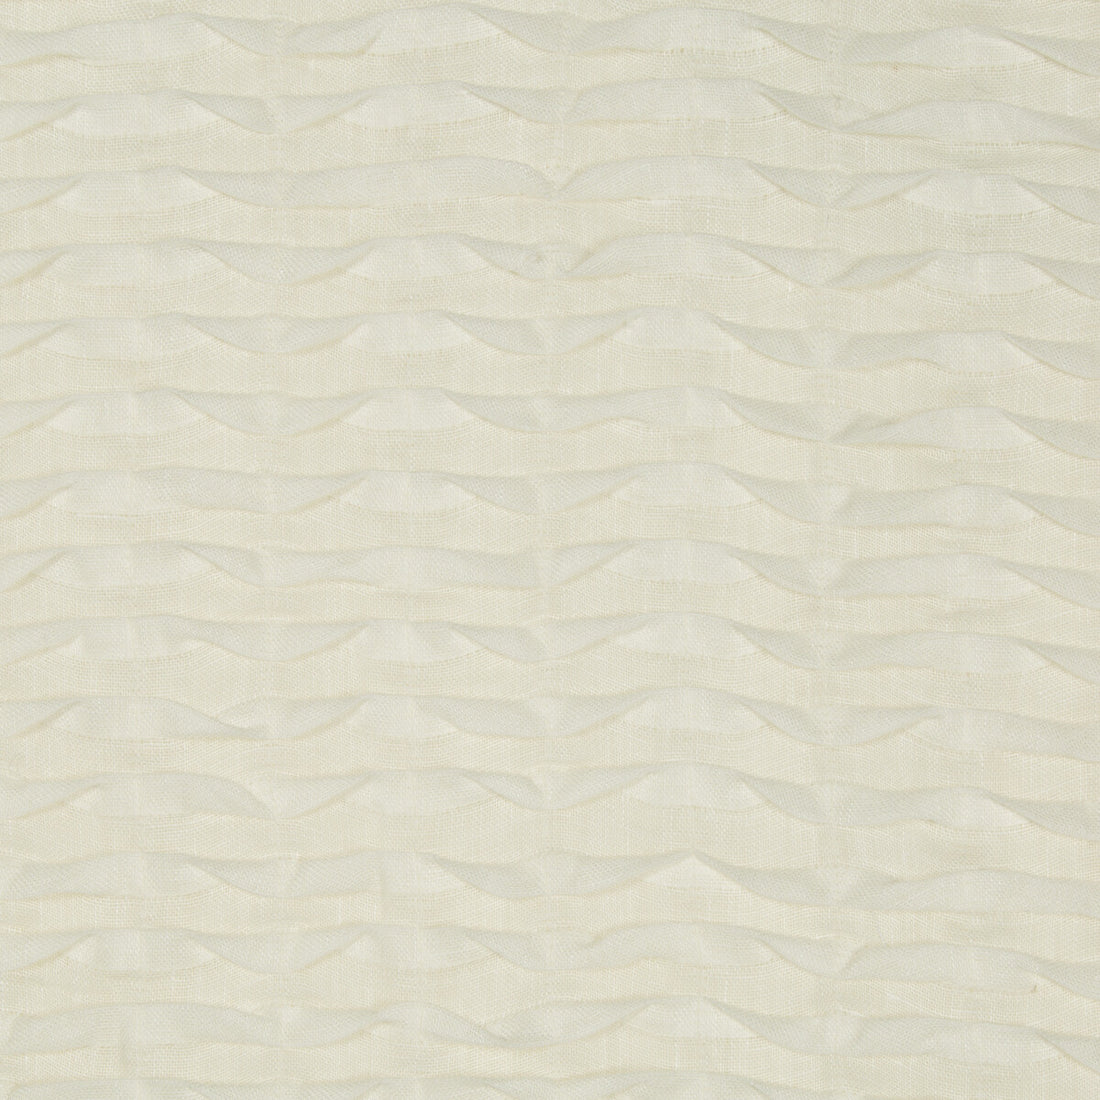 Kravet Basics fabric in 9673-101 color - pattern 9673.101.0 - by Kravet Basics